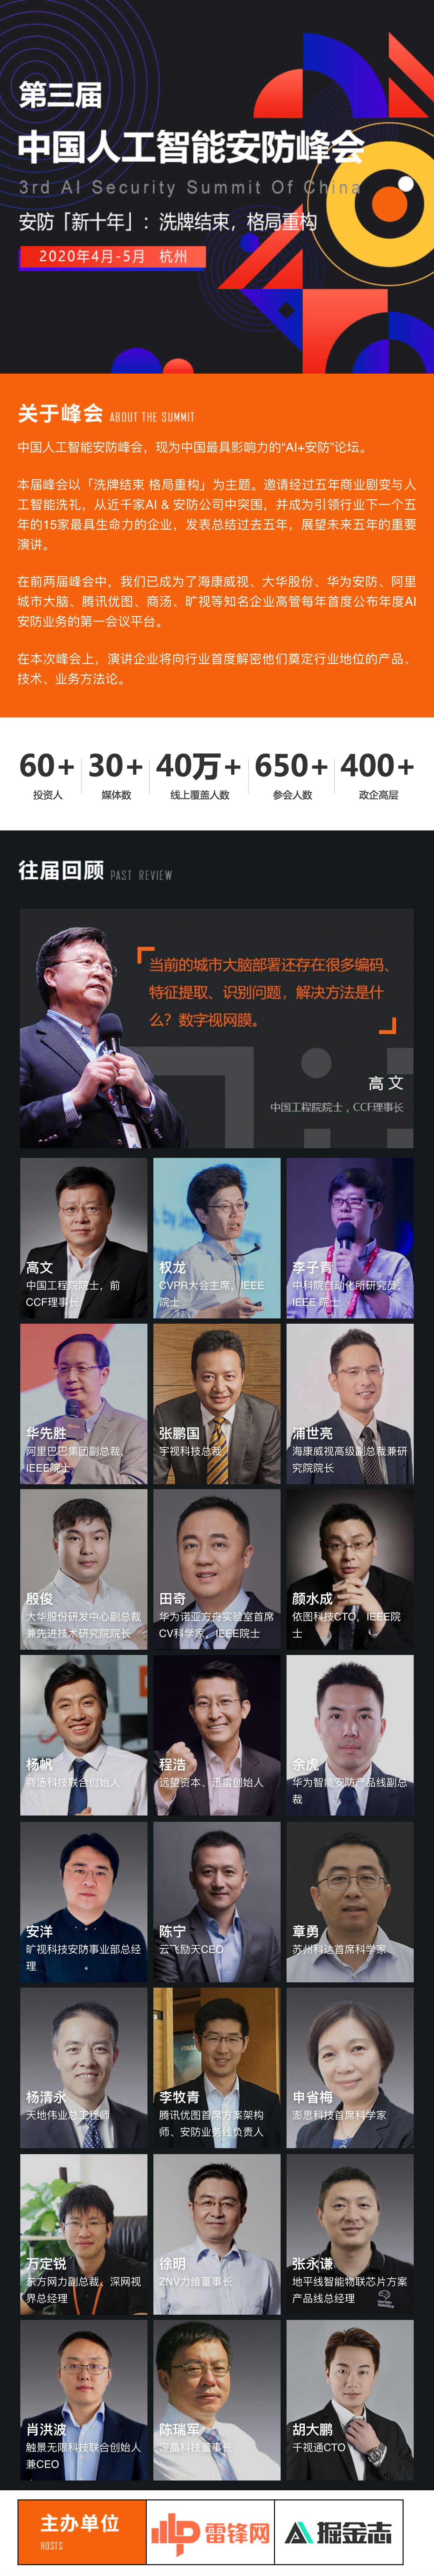 第三届中国人工智能安防峰会